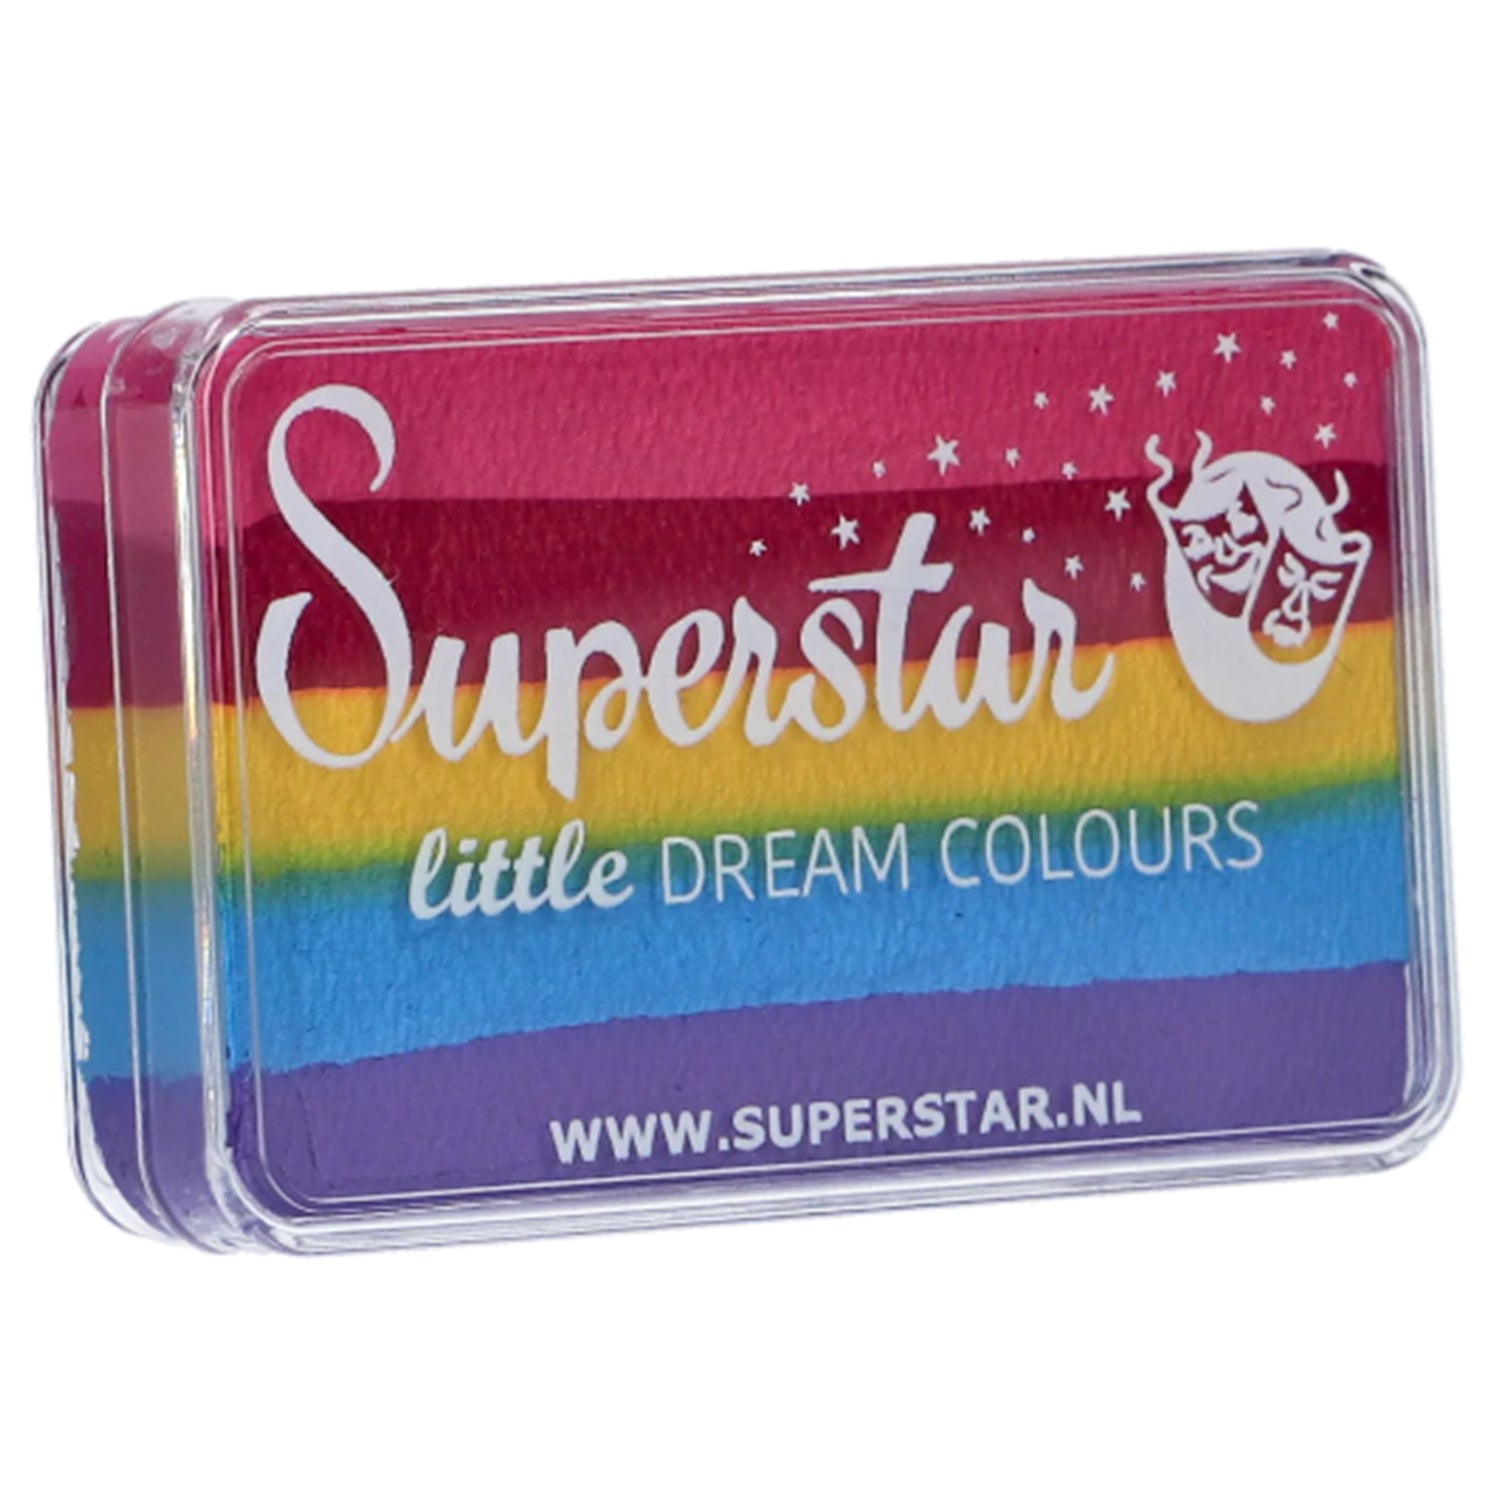 Superstar Dream Colours Rainbow Cake - Little Rainbow (1.06 oz/30 gm)